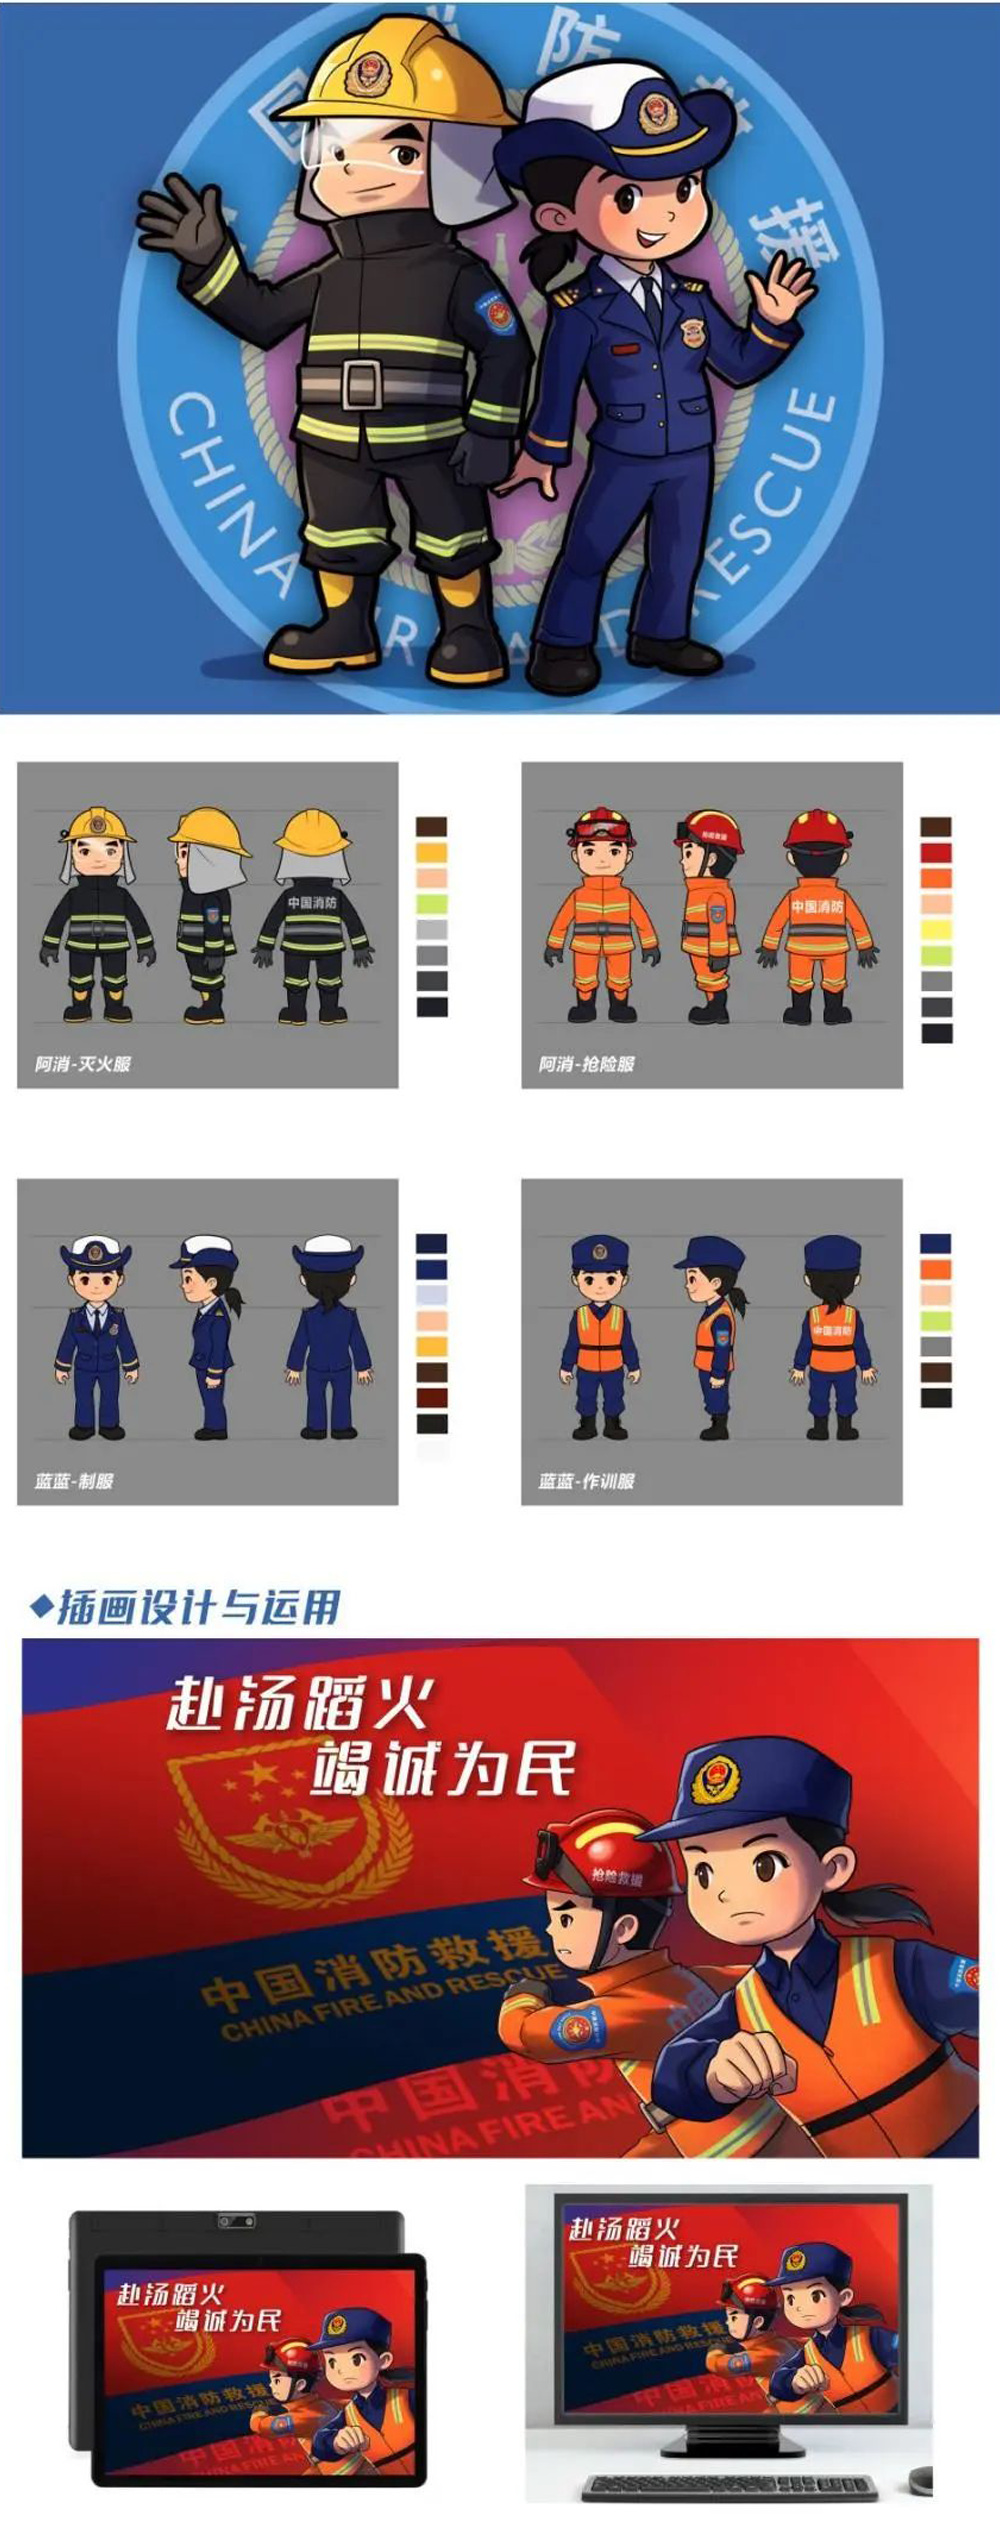 中国消防动漫形象创意设计大赛获奖名单及获奖作品(图2)